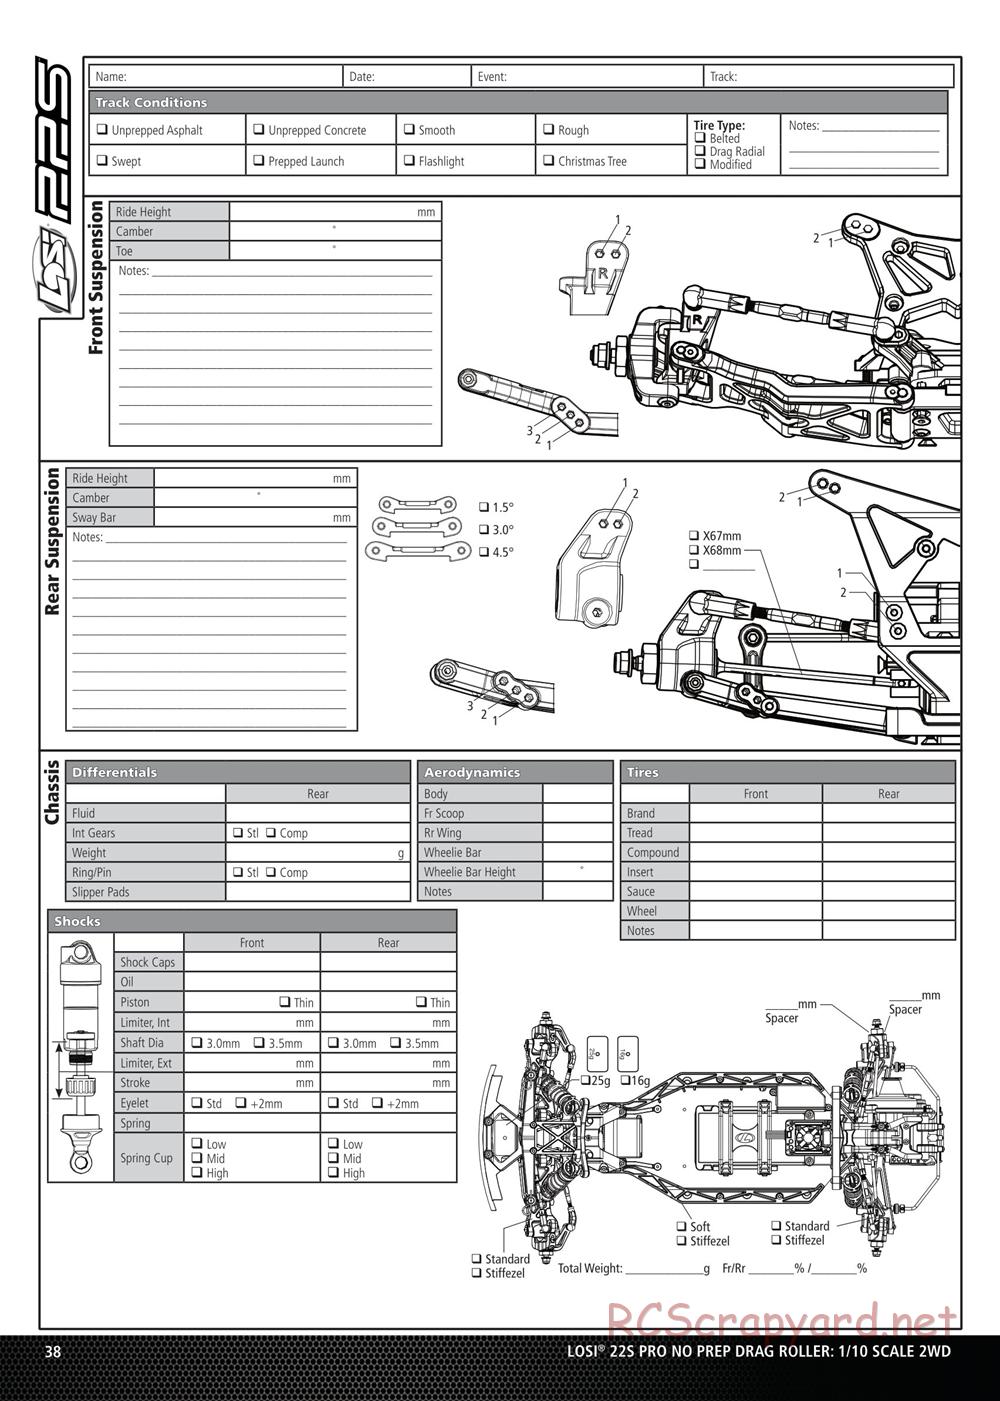 Team Losi - No Prep Drag Roller - Manual - Page 38